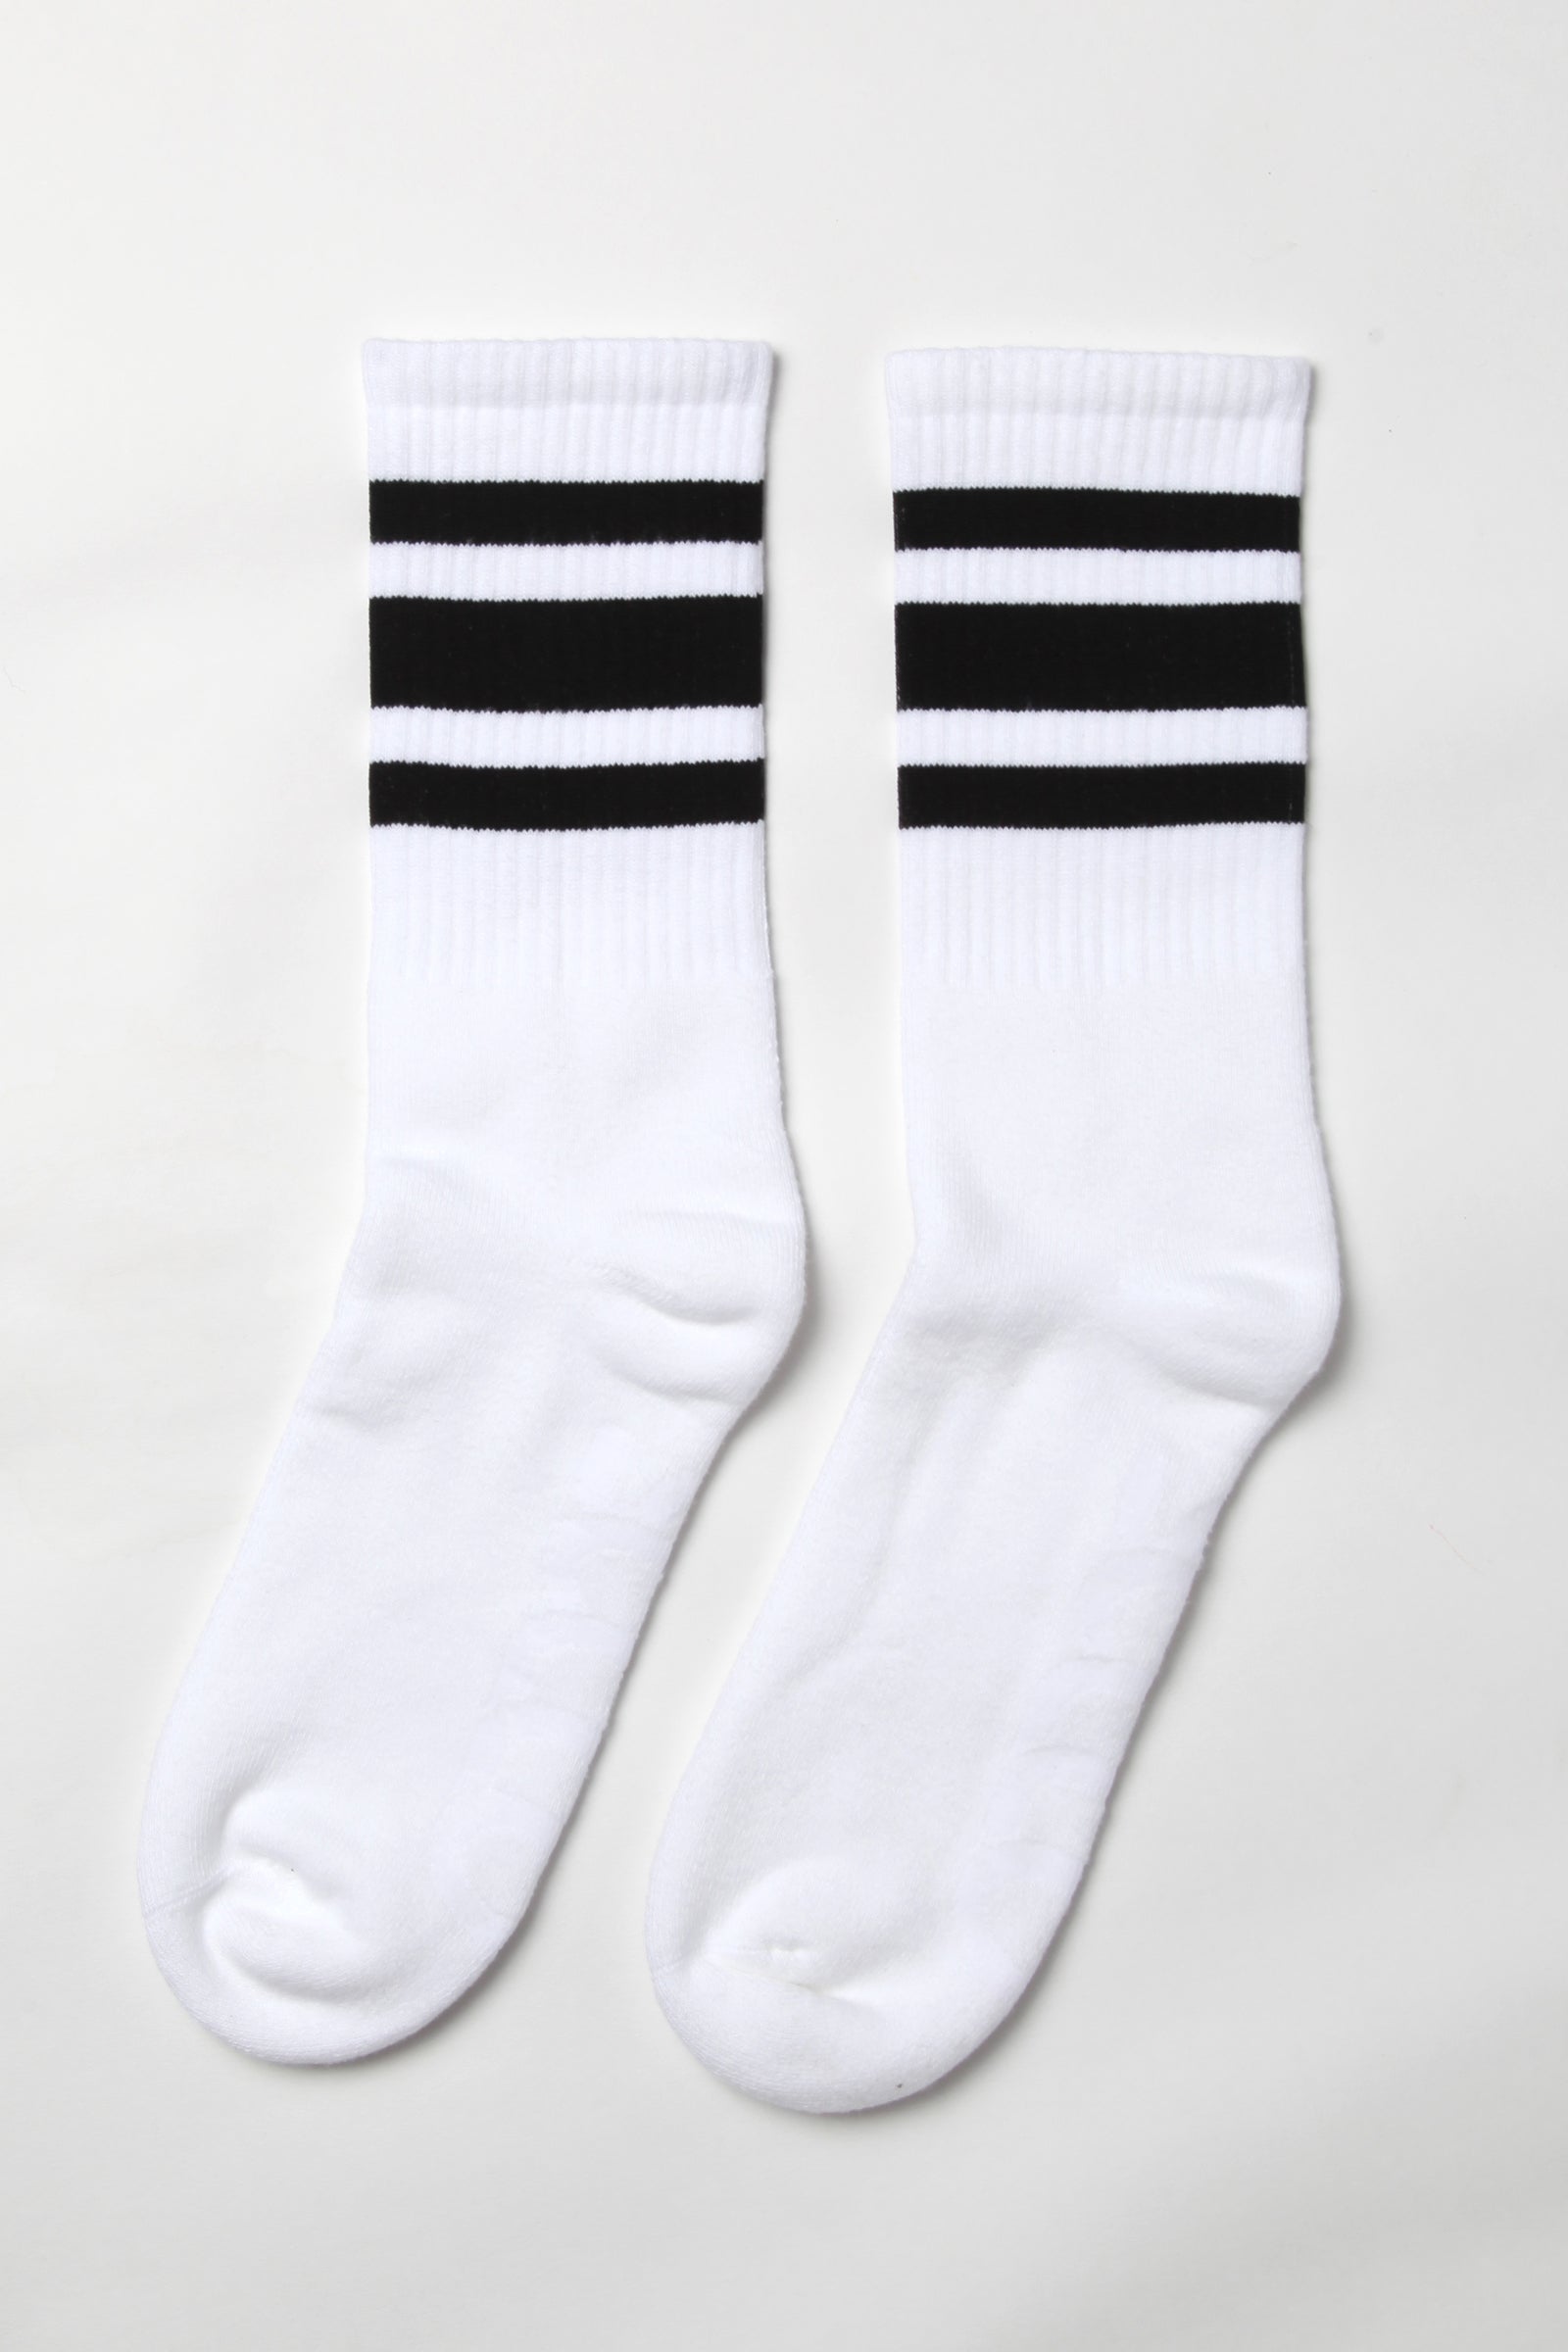 Socco - Striped Crew Socks - Black/White